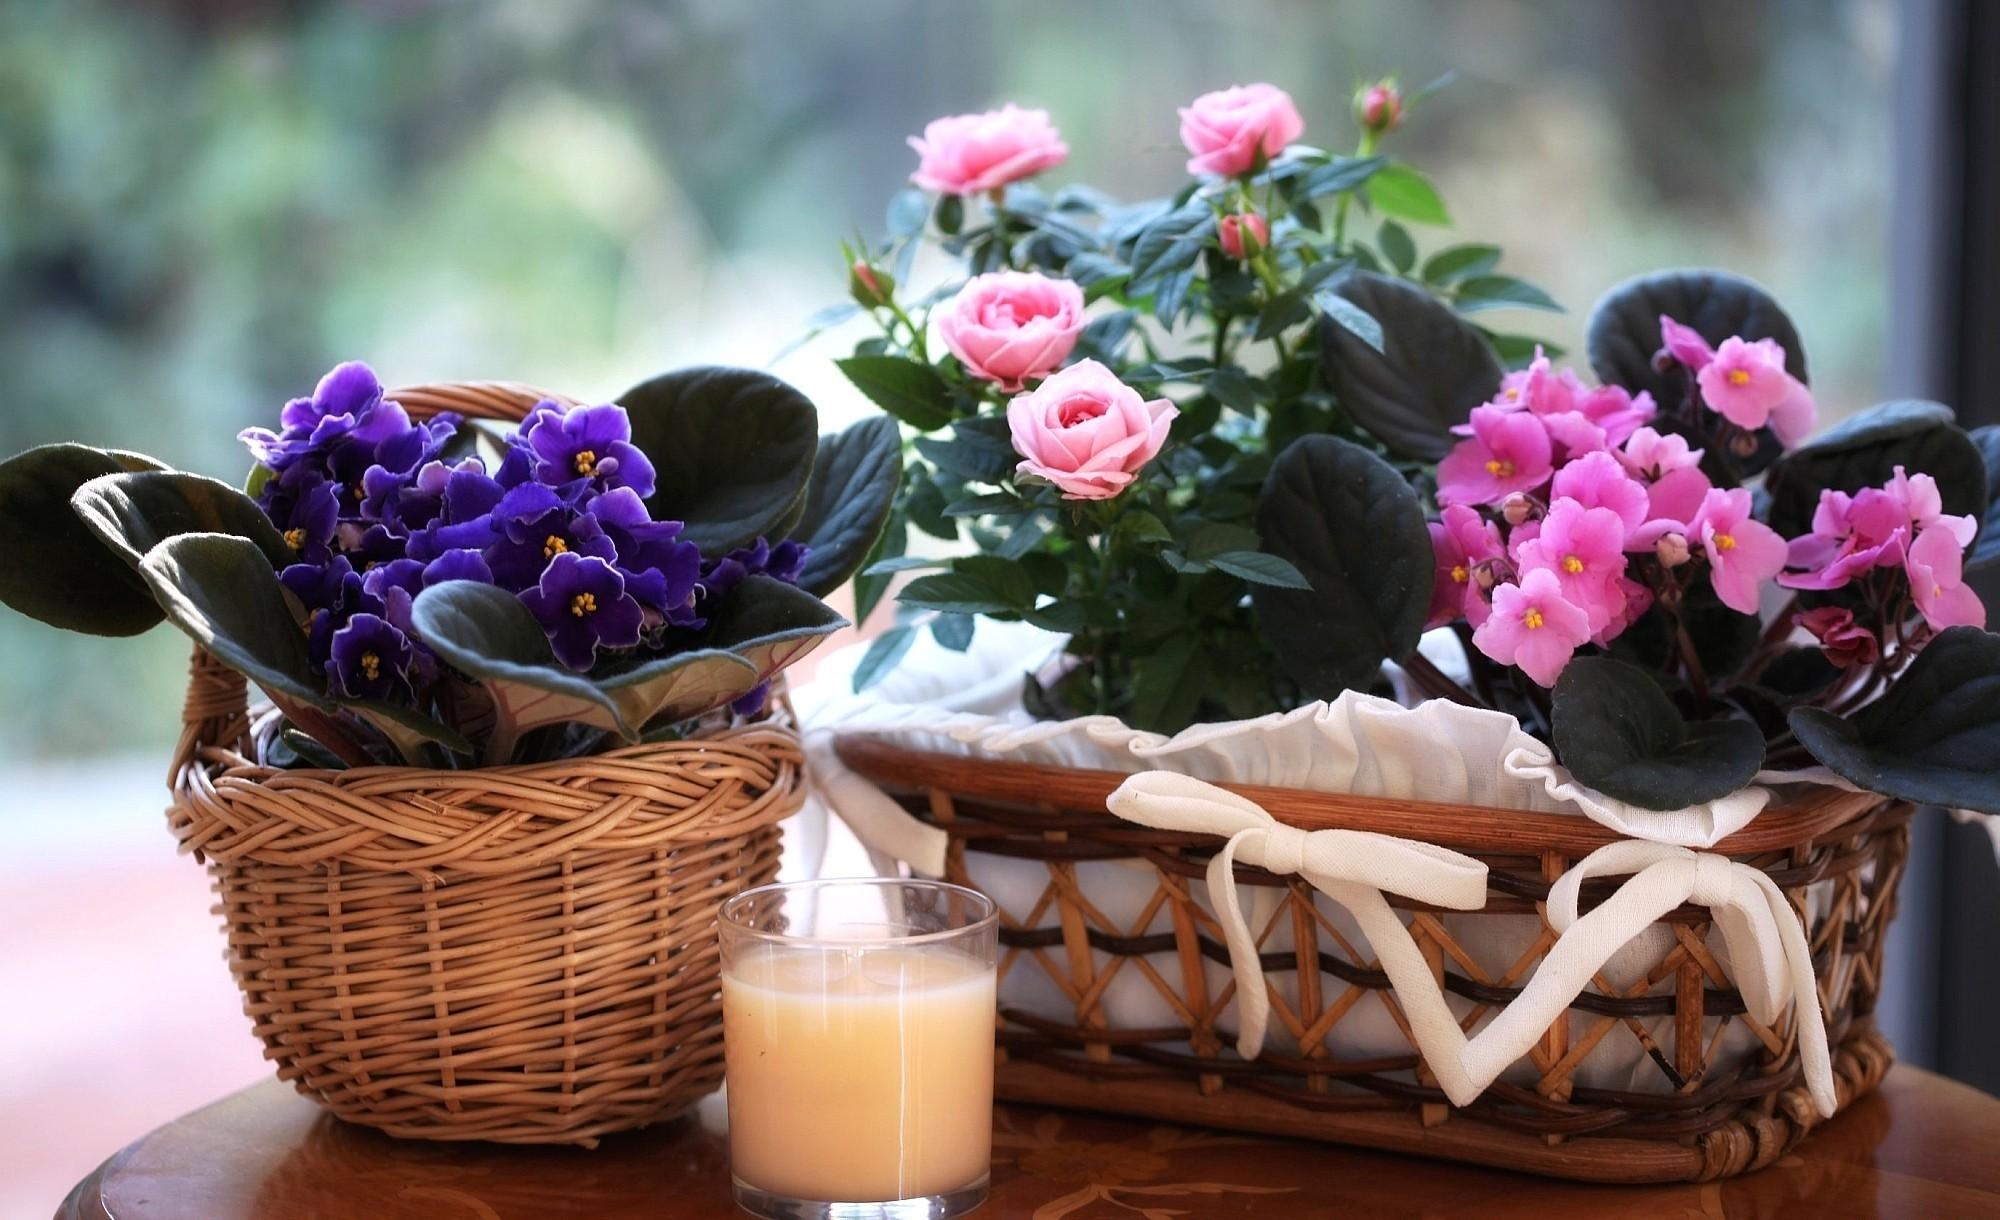 flowers, roses, violet, bloom, flowering, glass, basket, drink, beverage, baskets